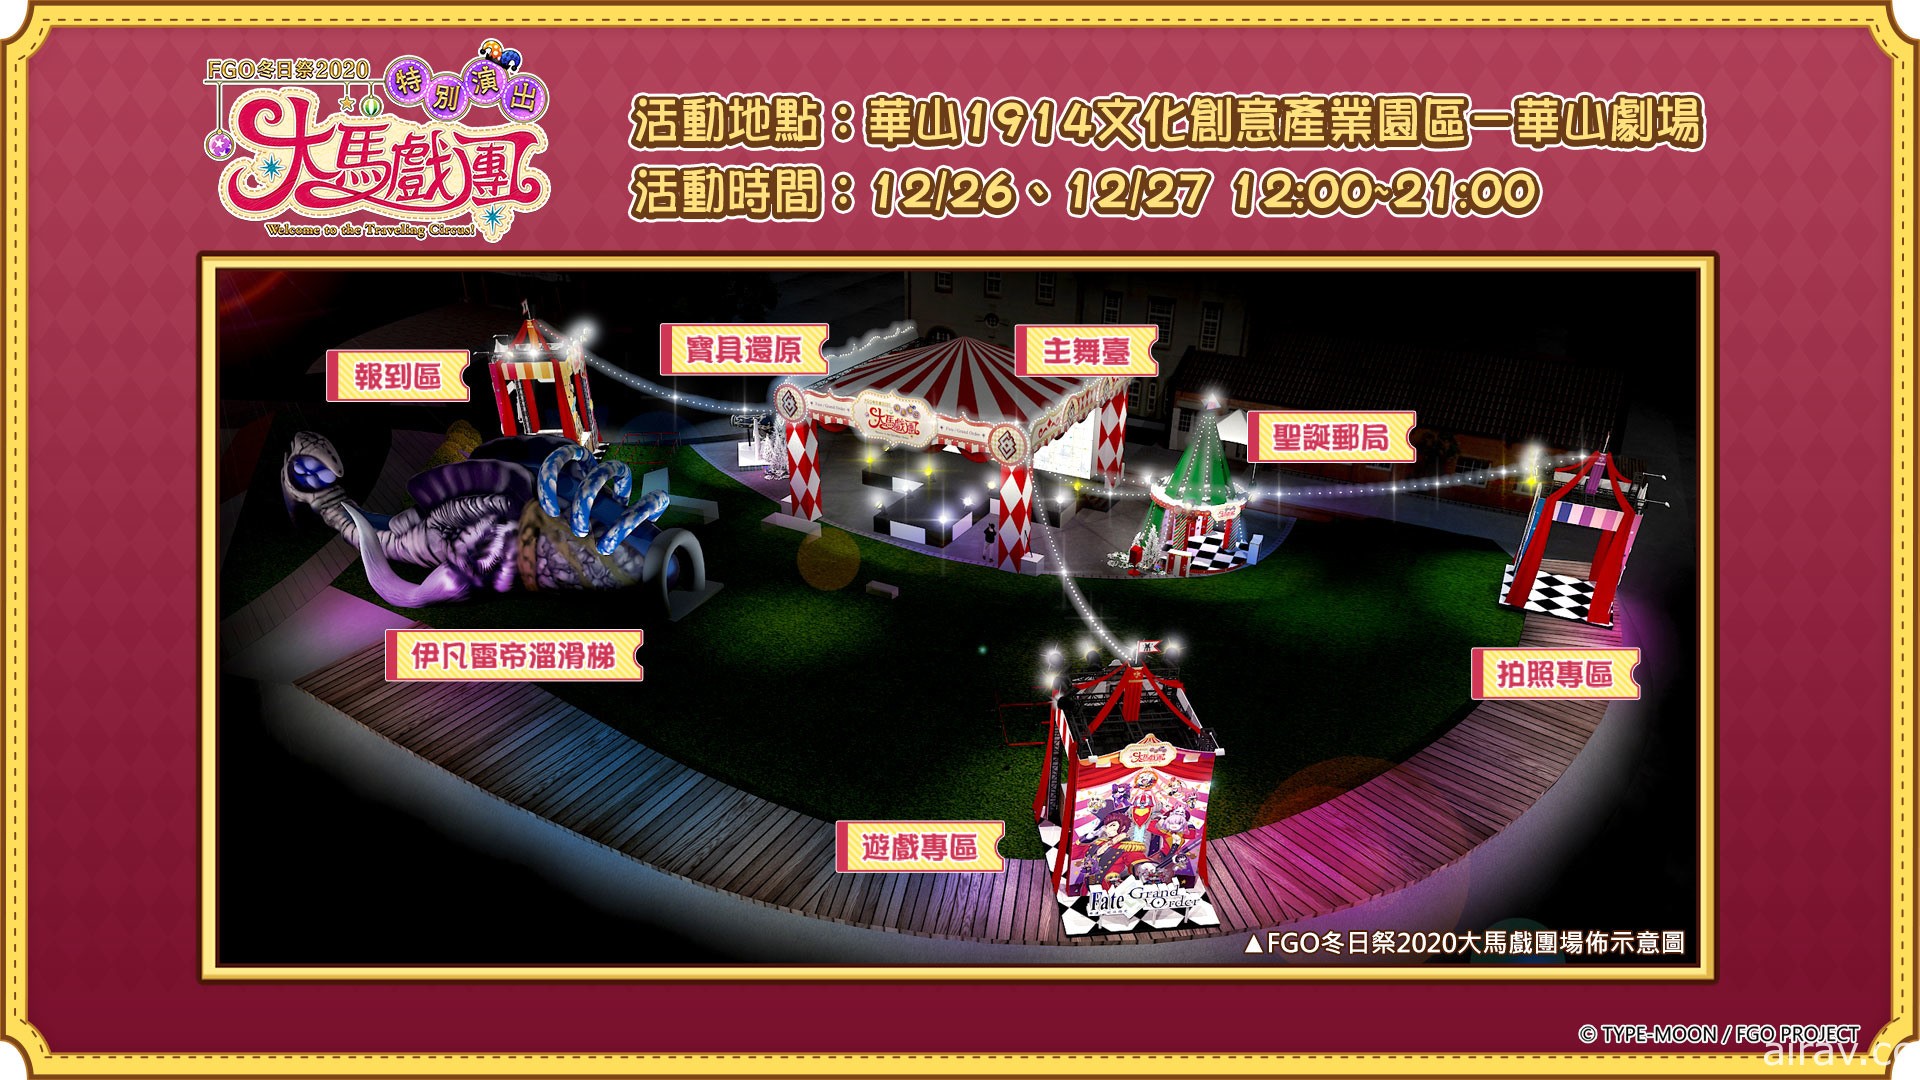 《Fate/Grand Order》繁中版“冬日祭 2020 大马戏团”线下活动明日开幕